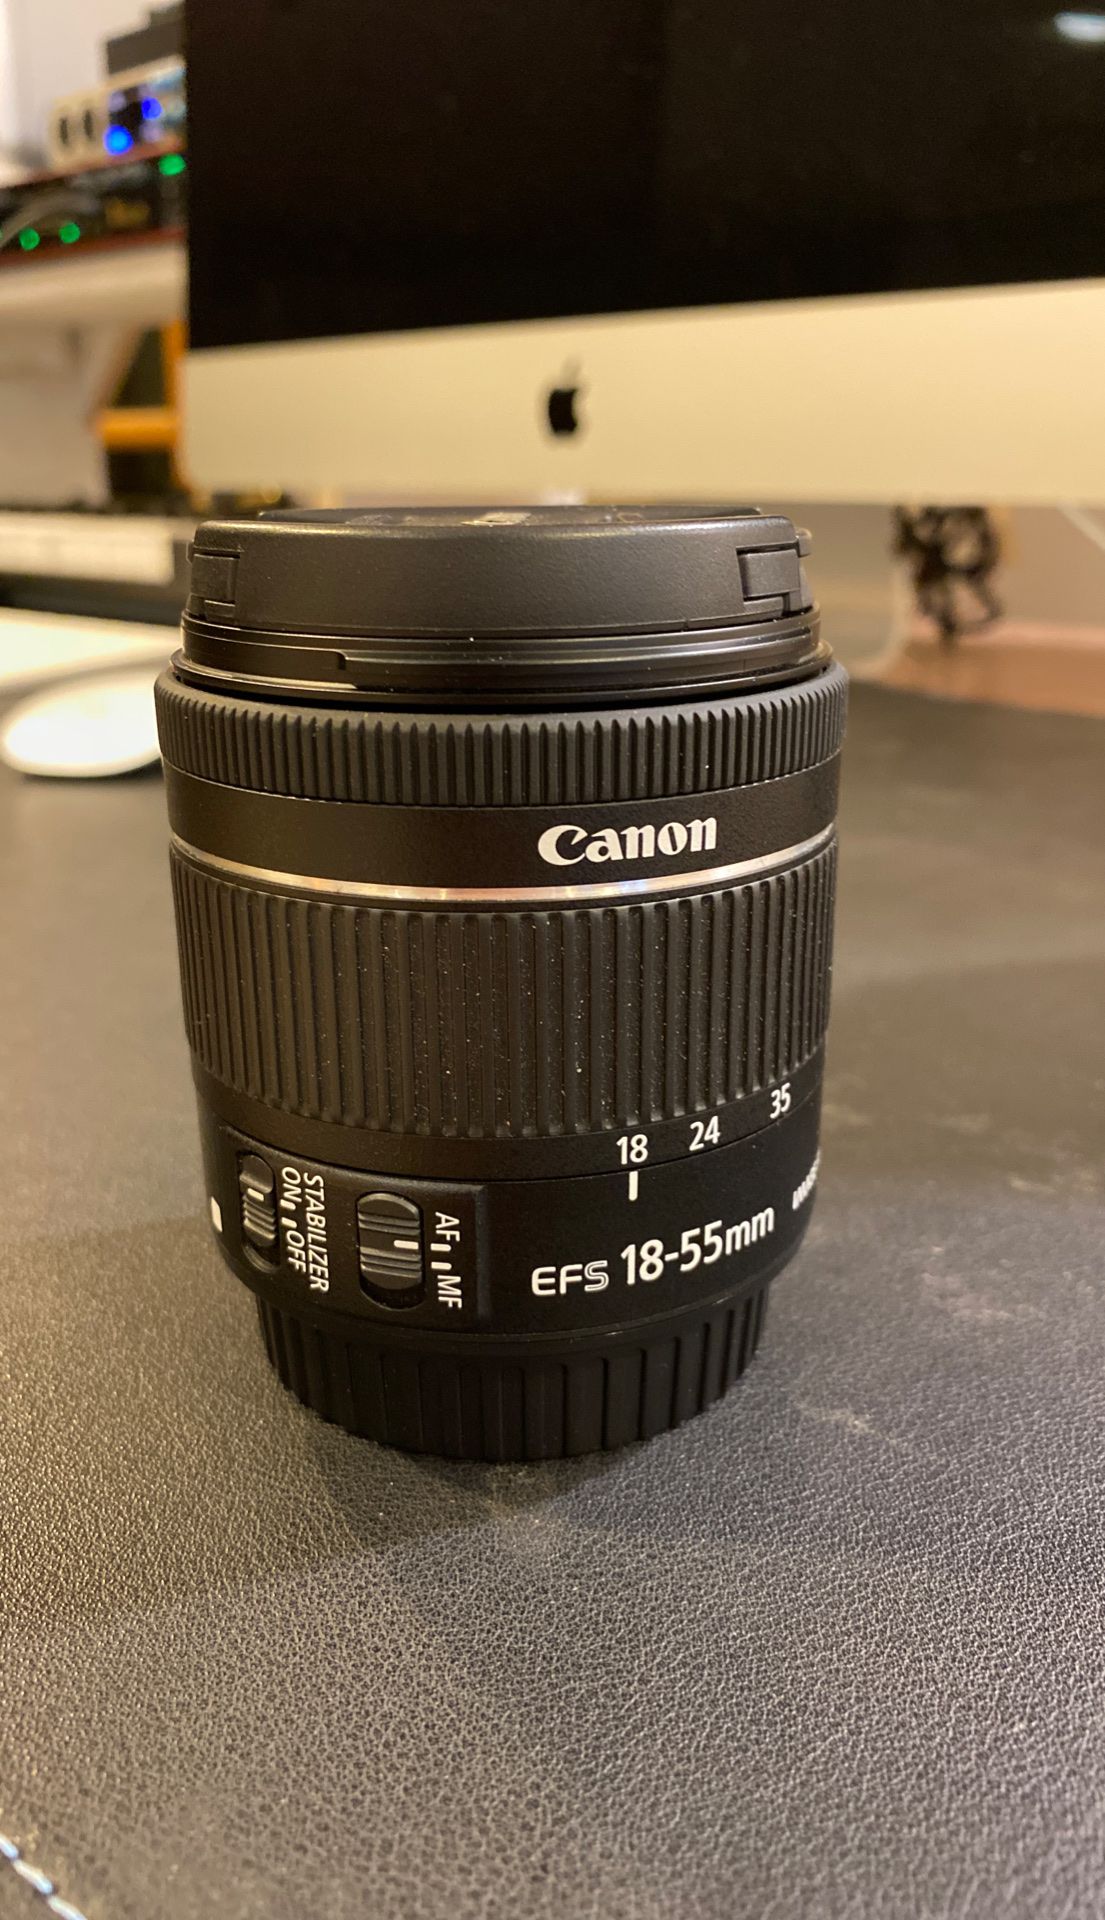 Canon camera lens